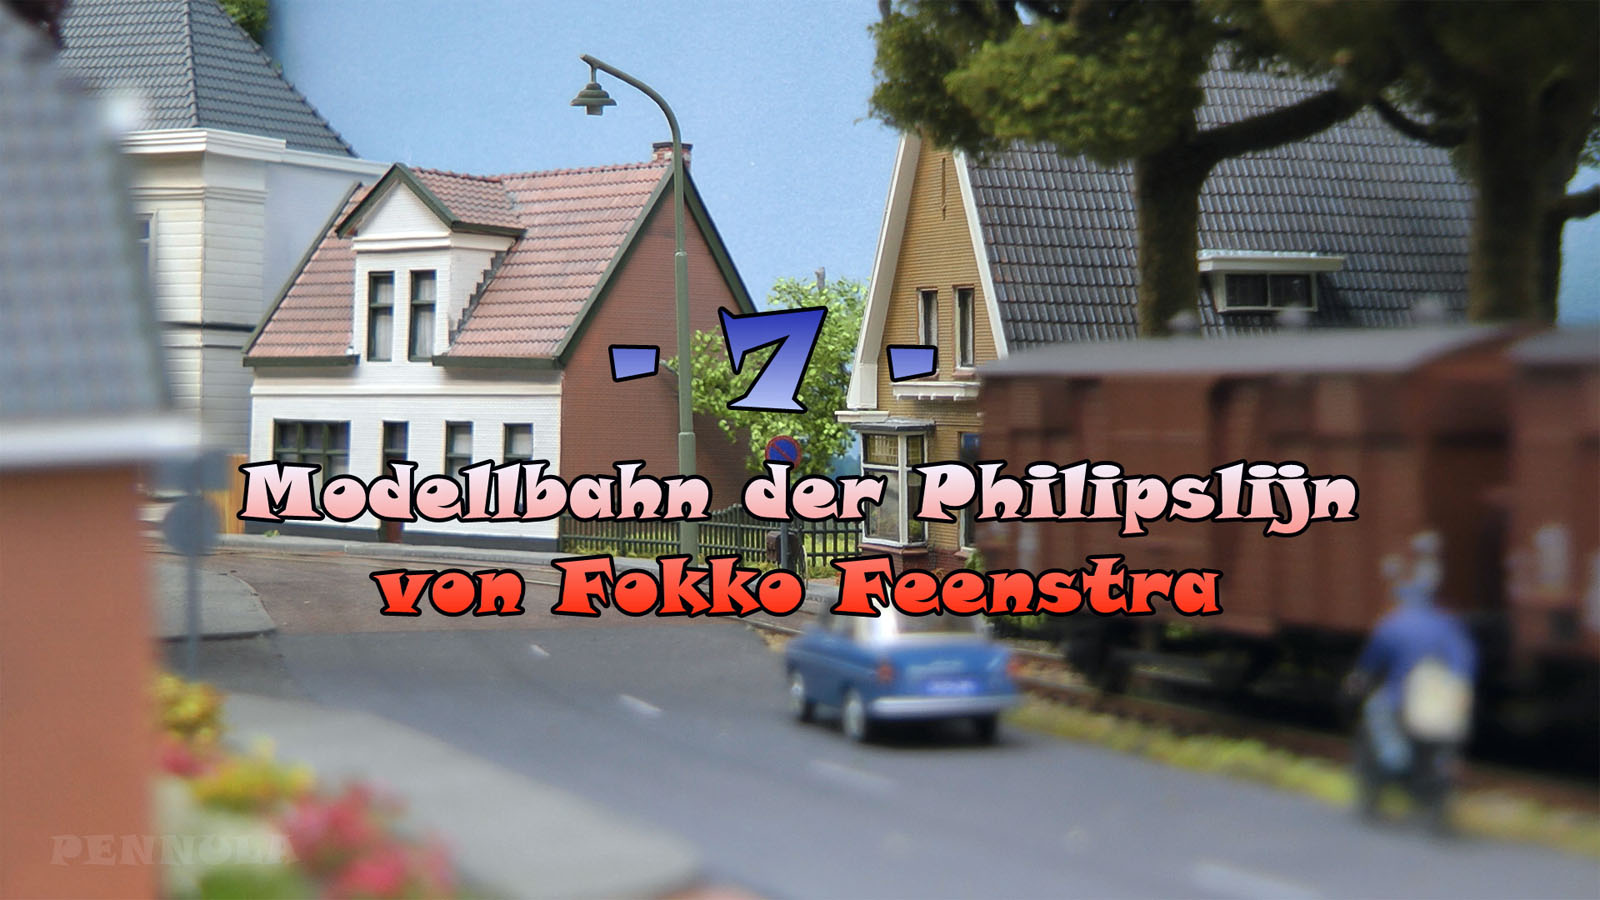 Modellbahn der Philipslijn von Fokko Feenstra